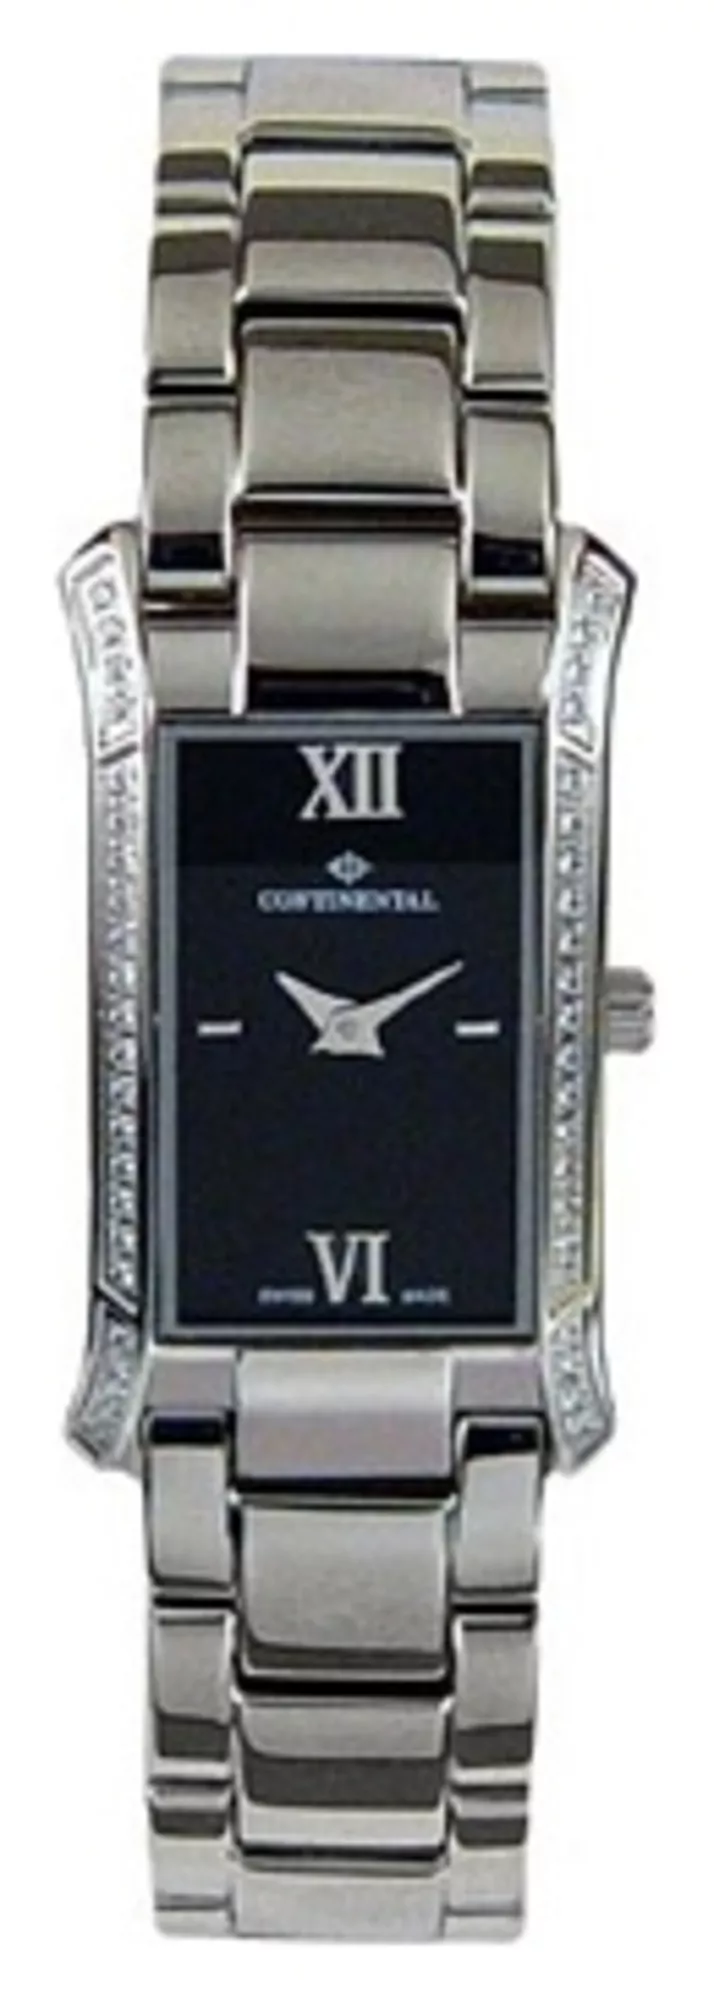 Часы Continental 1354-208